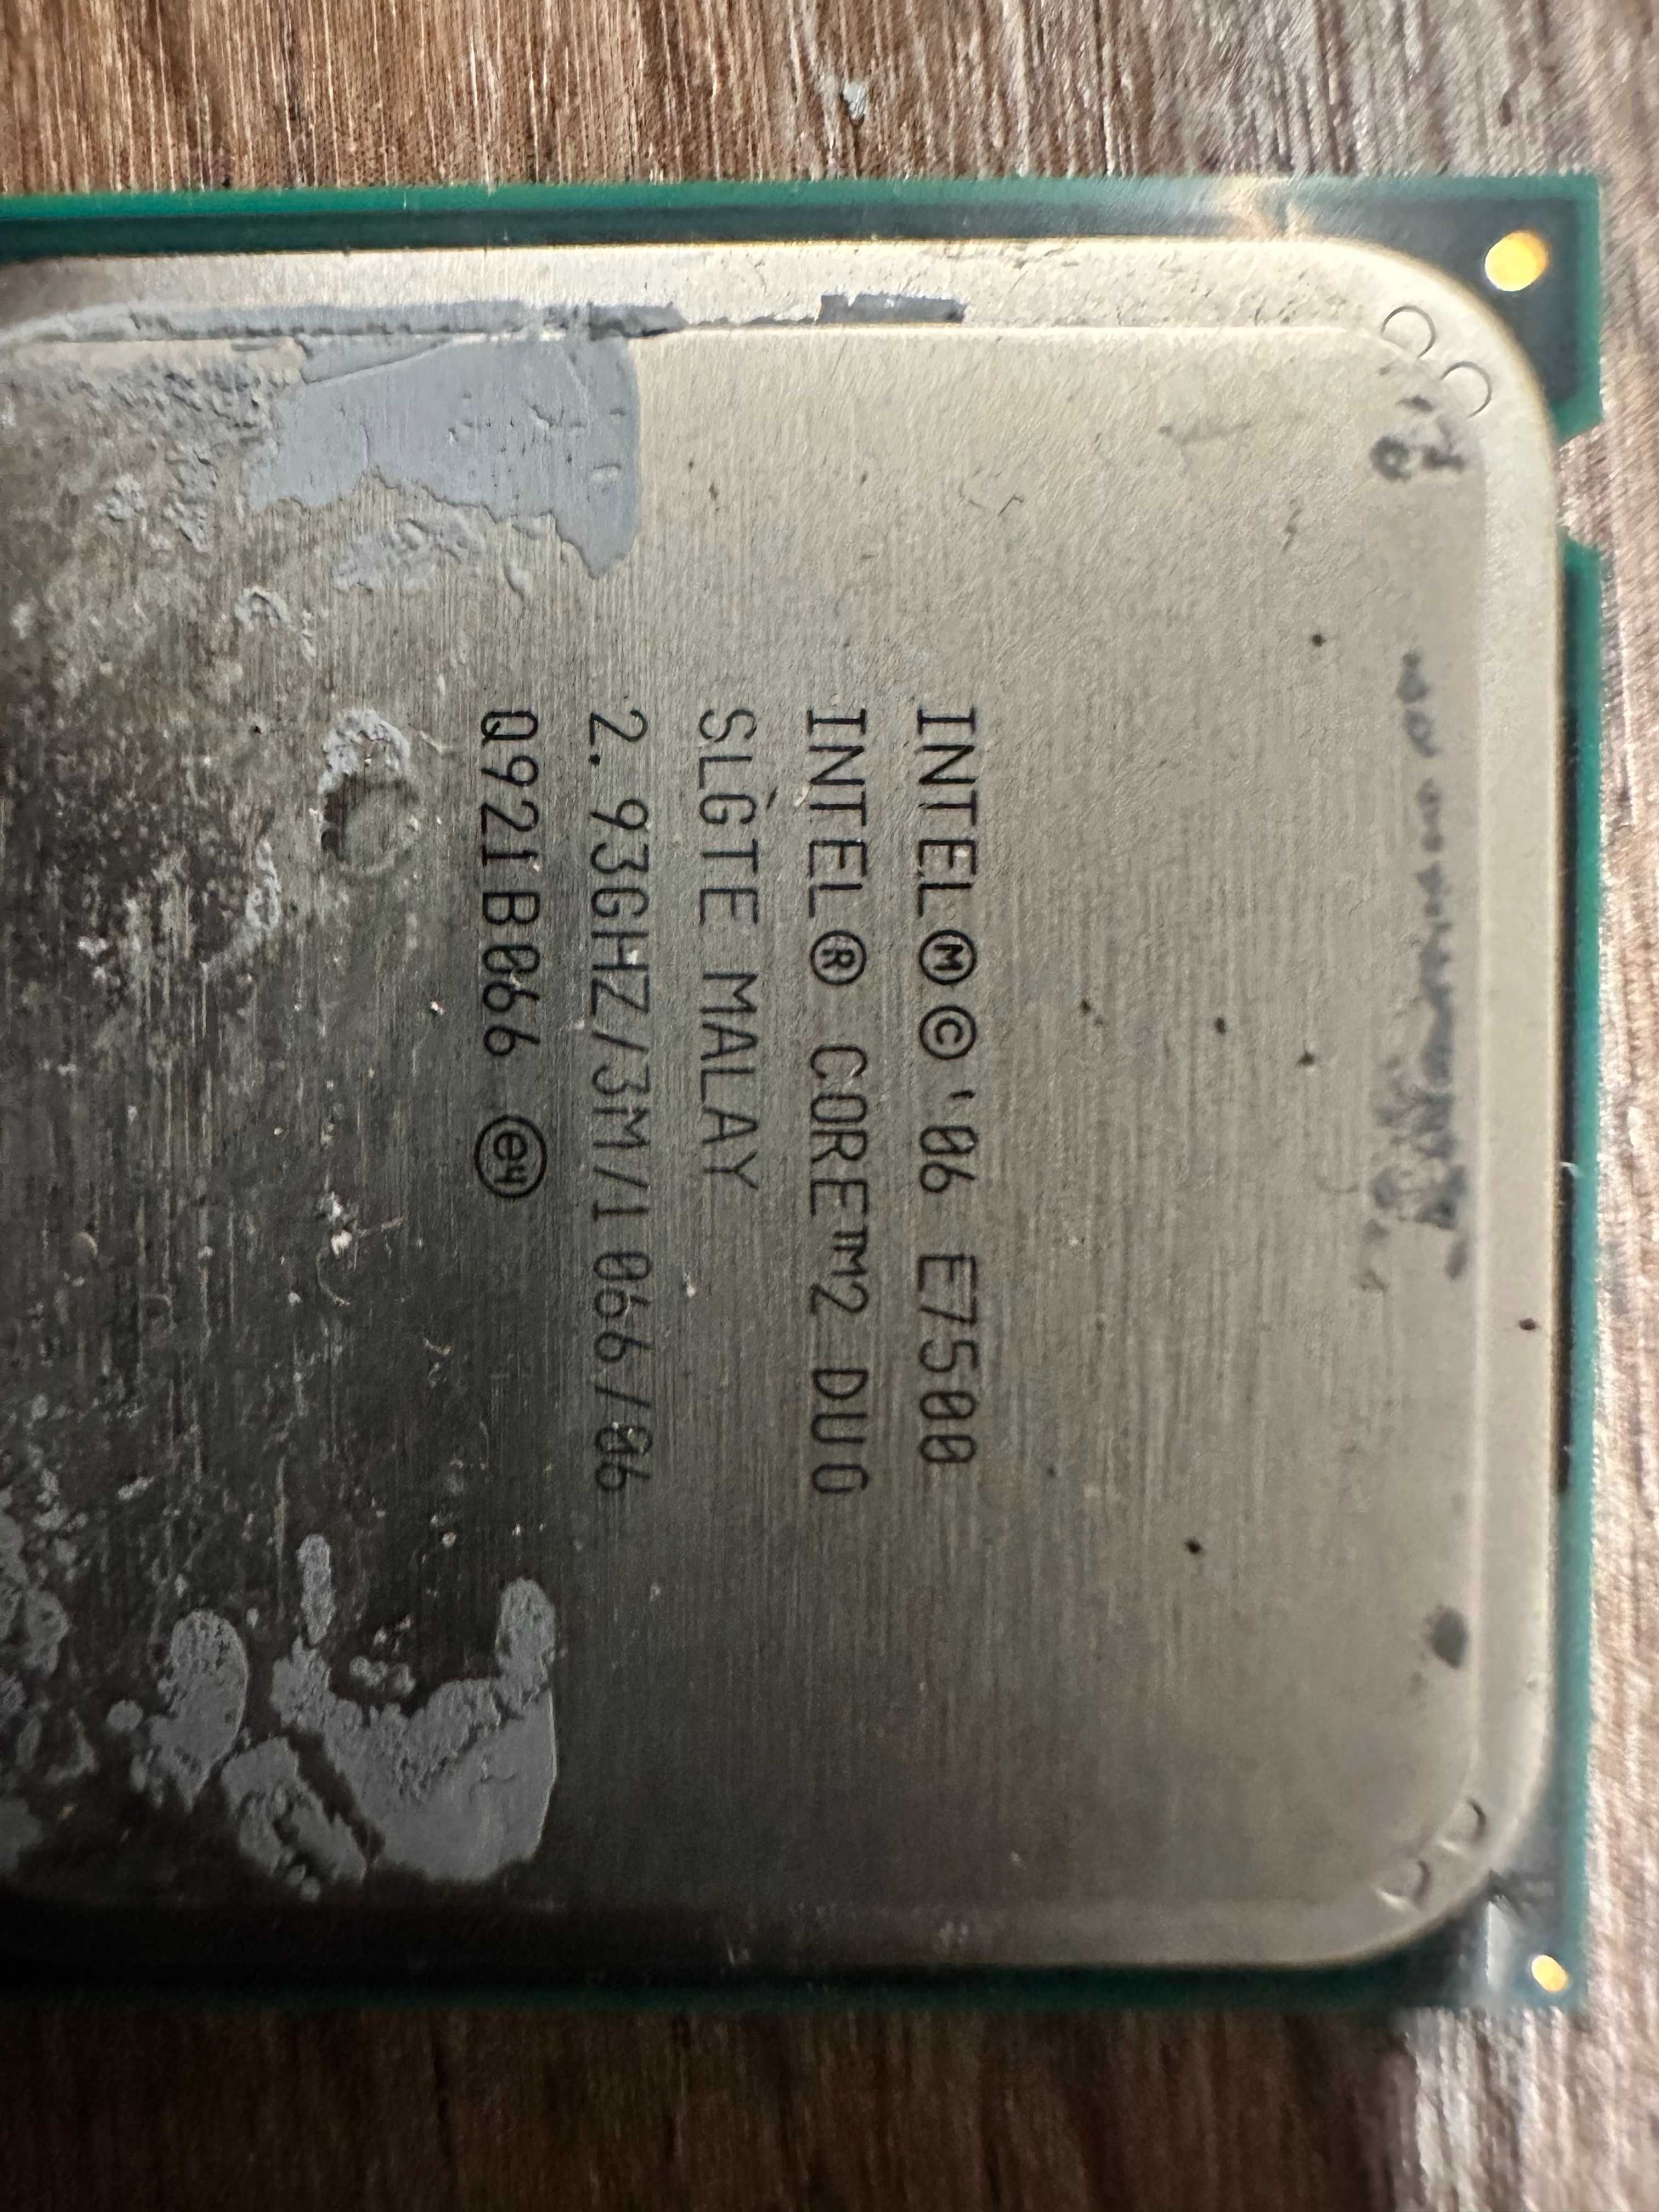 Intel Core 2 Duo E7500 2.93GHz SLGTE LGA775